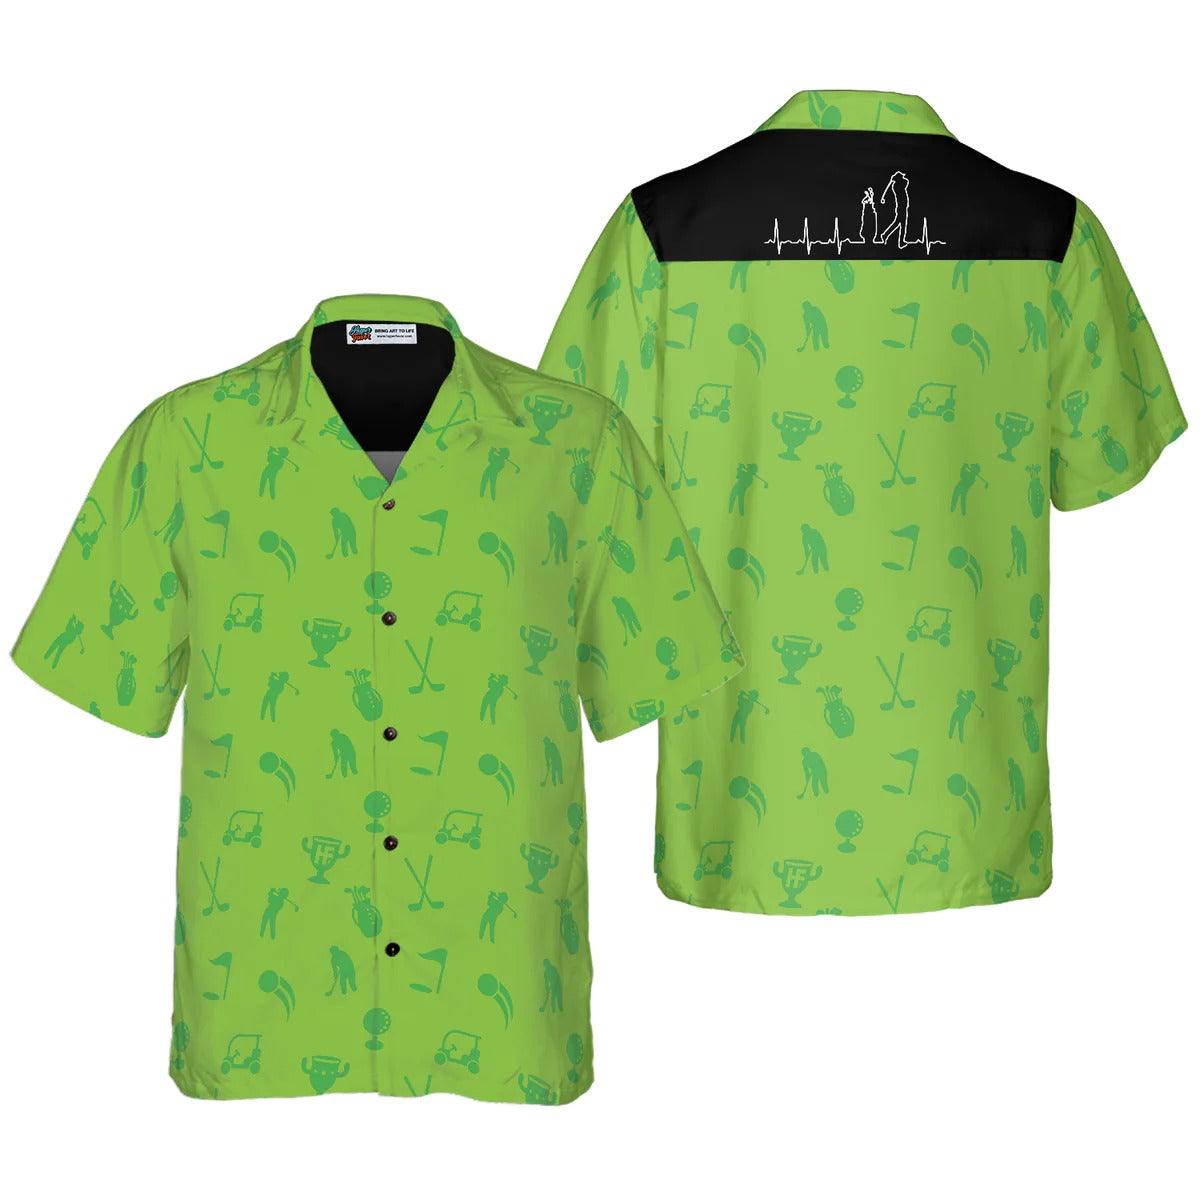 Golf Hawaiian Shirt Heartbeat Lifeline, Heartbeat Aloha Hawaiian Shirt, Golf Aloha Shirt - Perfect Gift For Men, Women, Golf Lover Friend, Family - Amzanimalsgift